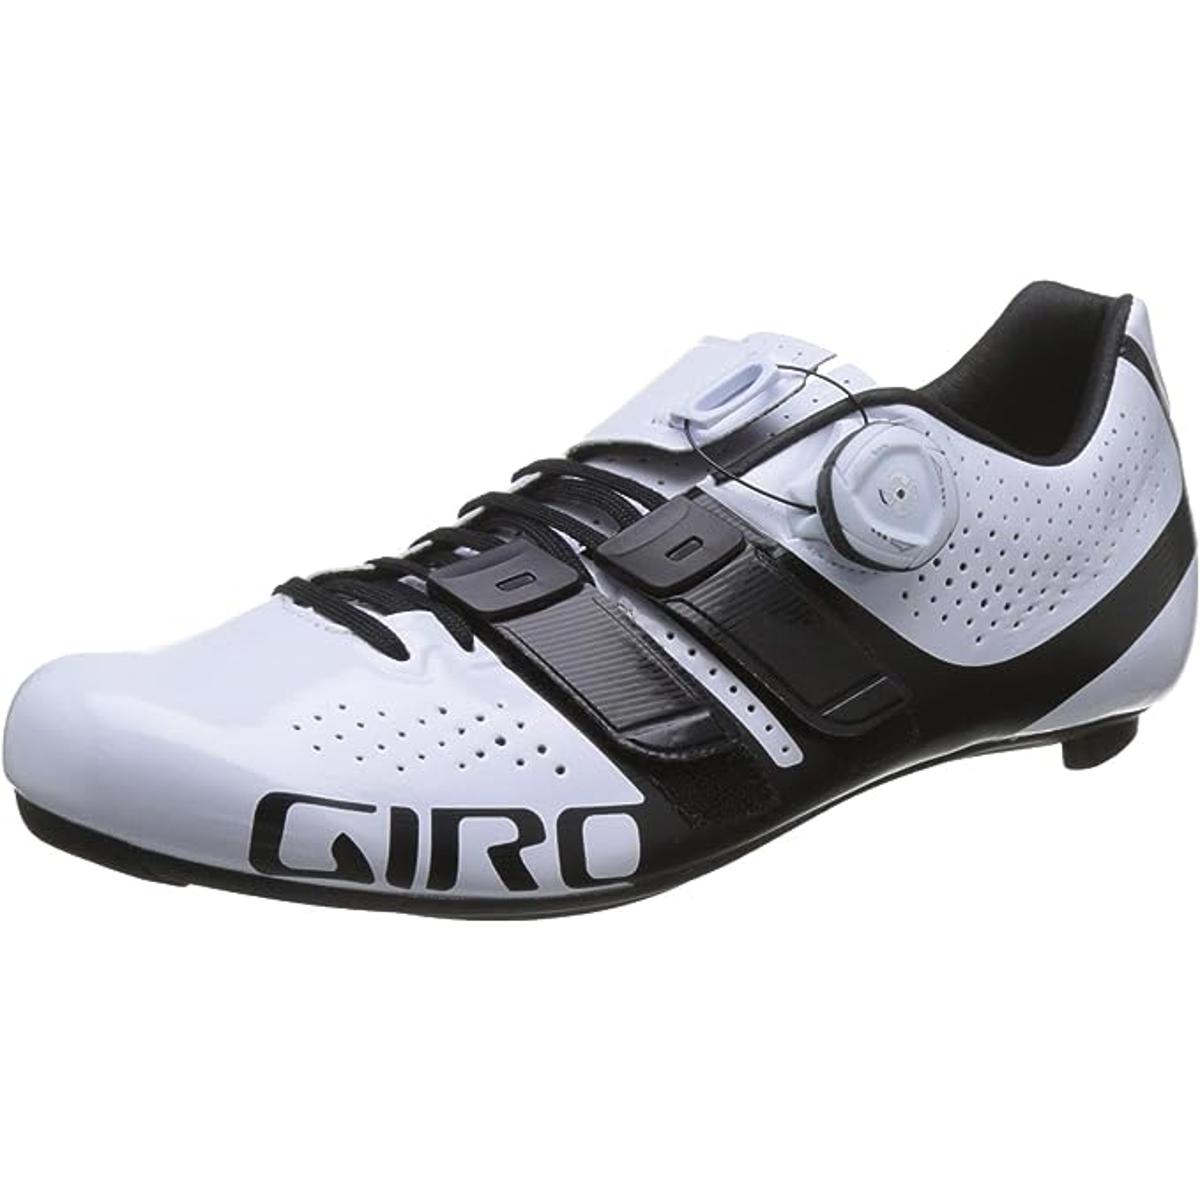 Giro Factress Techlace Road Cycling Shoes